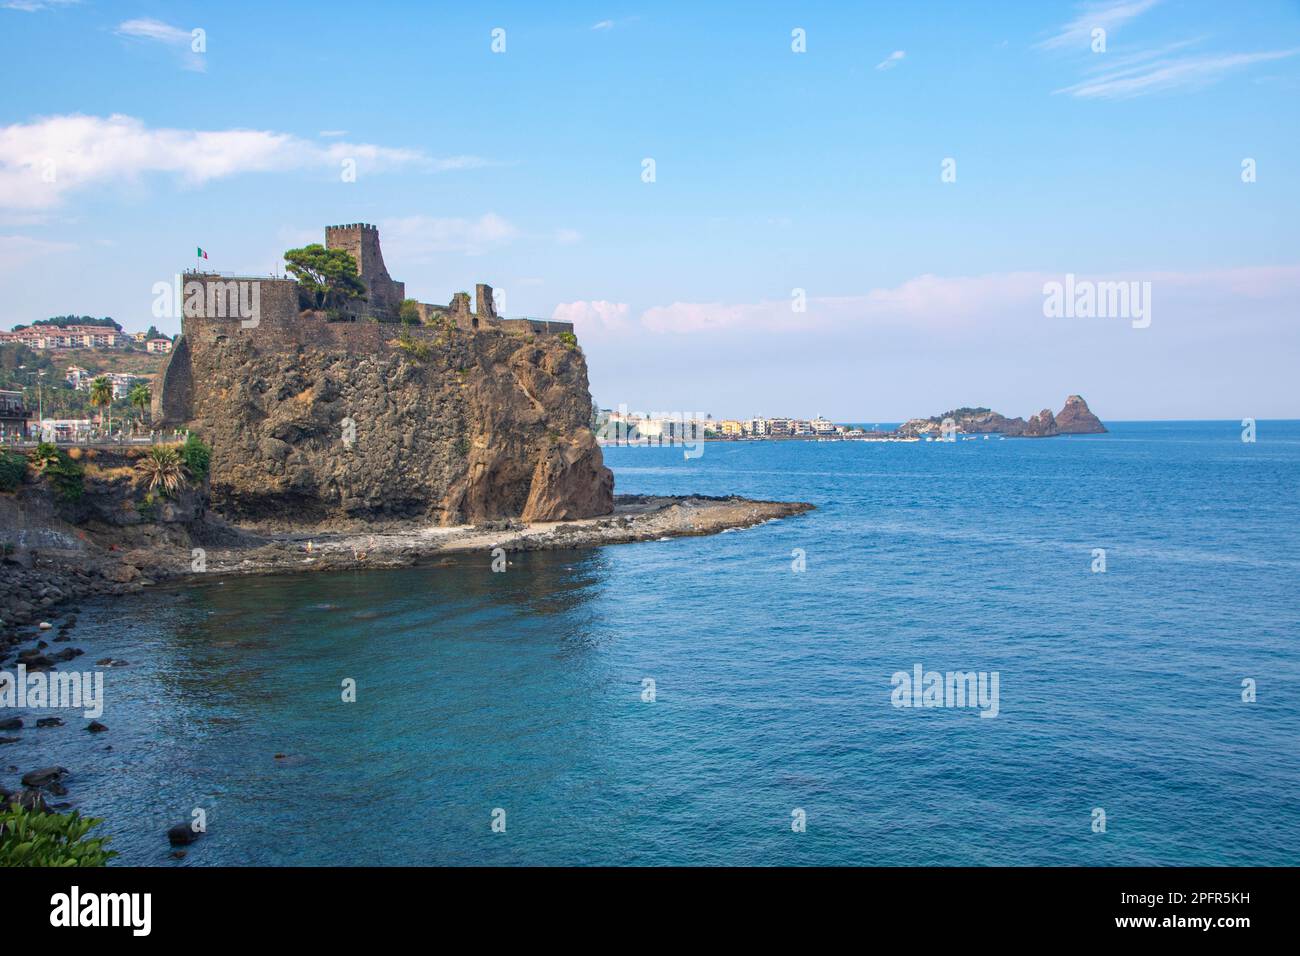 Il Castello Normanno di Aci Castello, in provincia di Catania, Sicilia, Italia Foto Stock